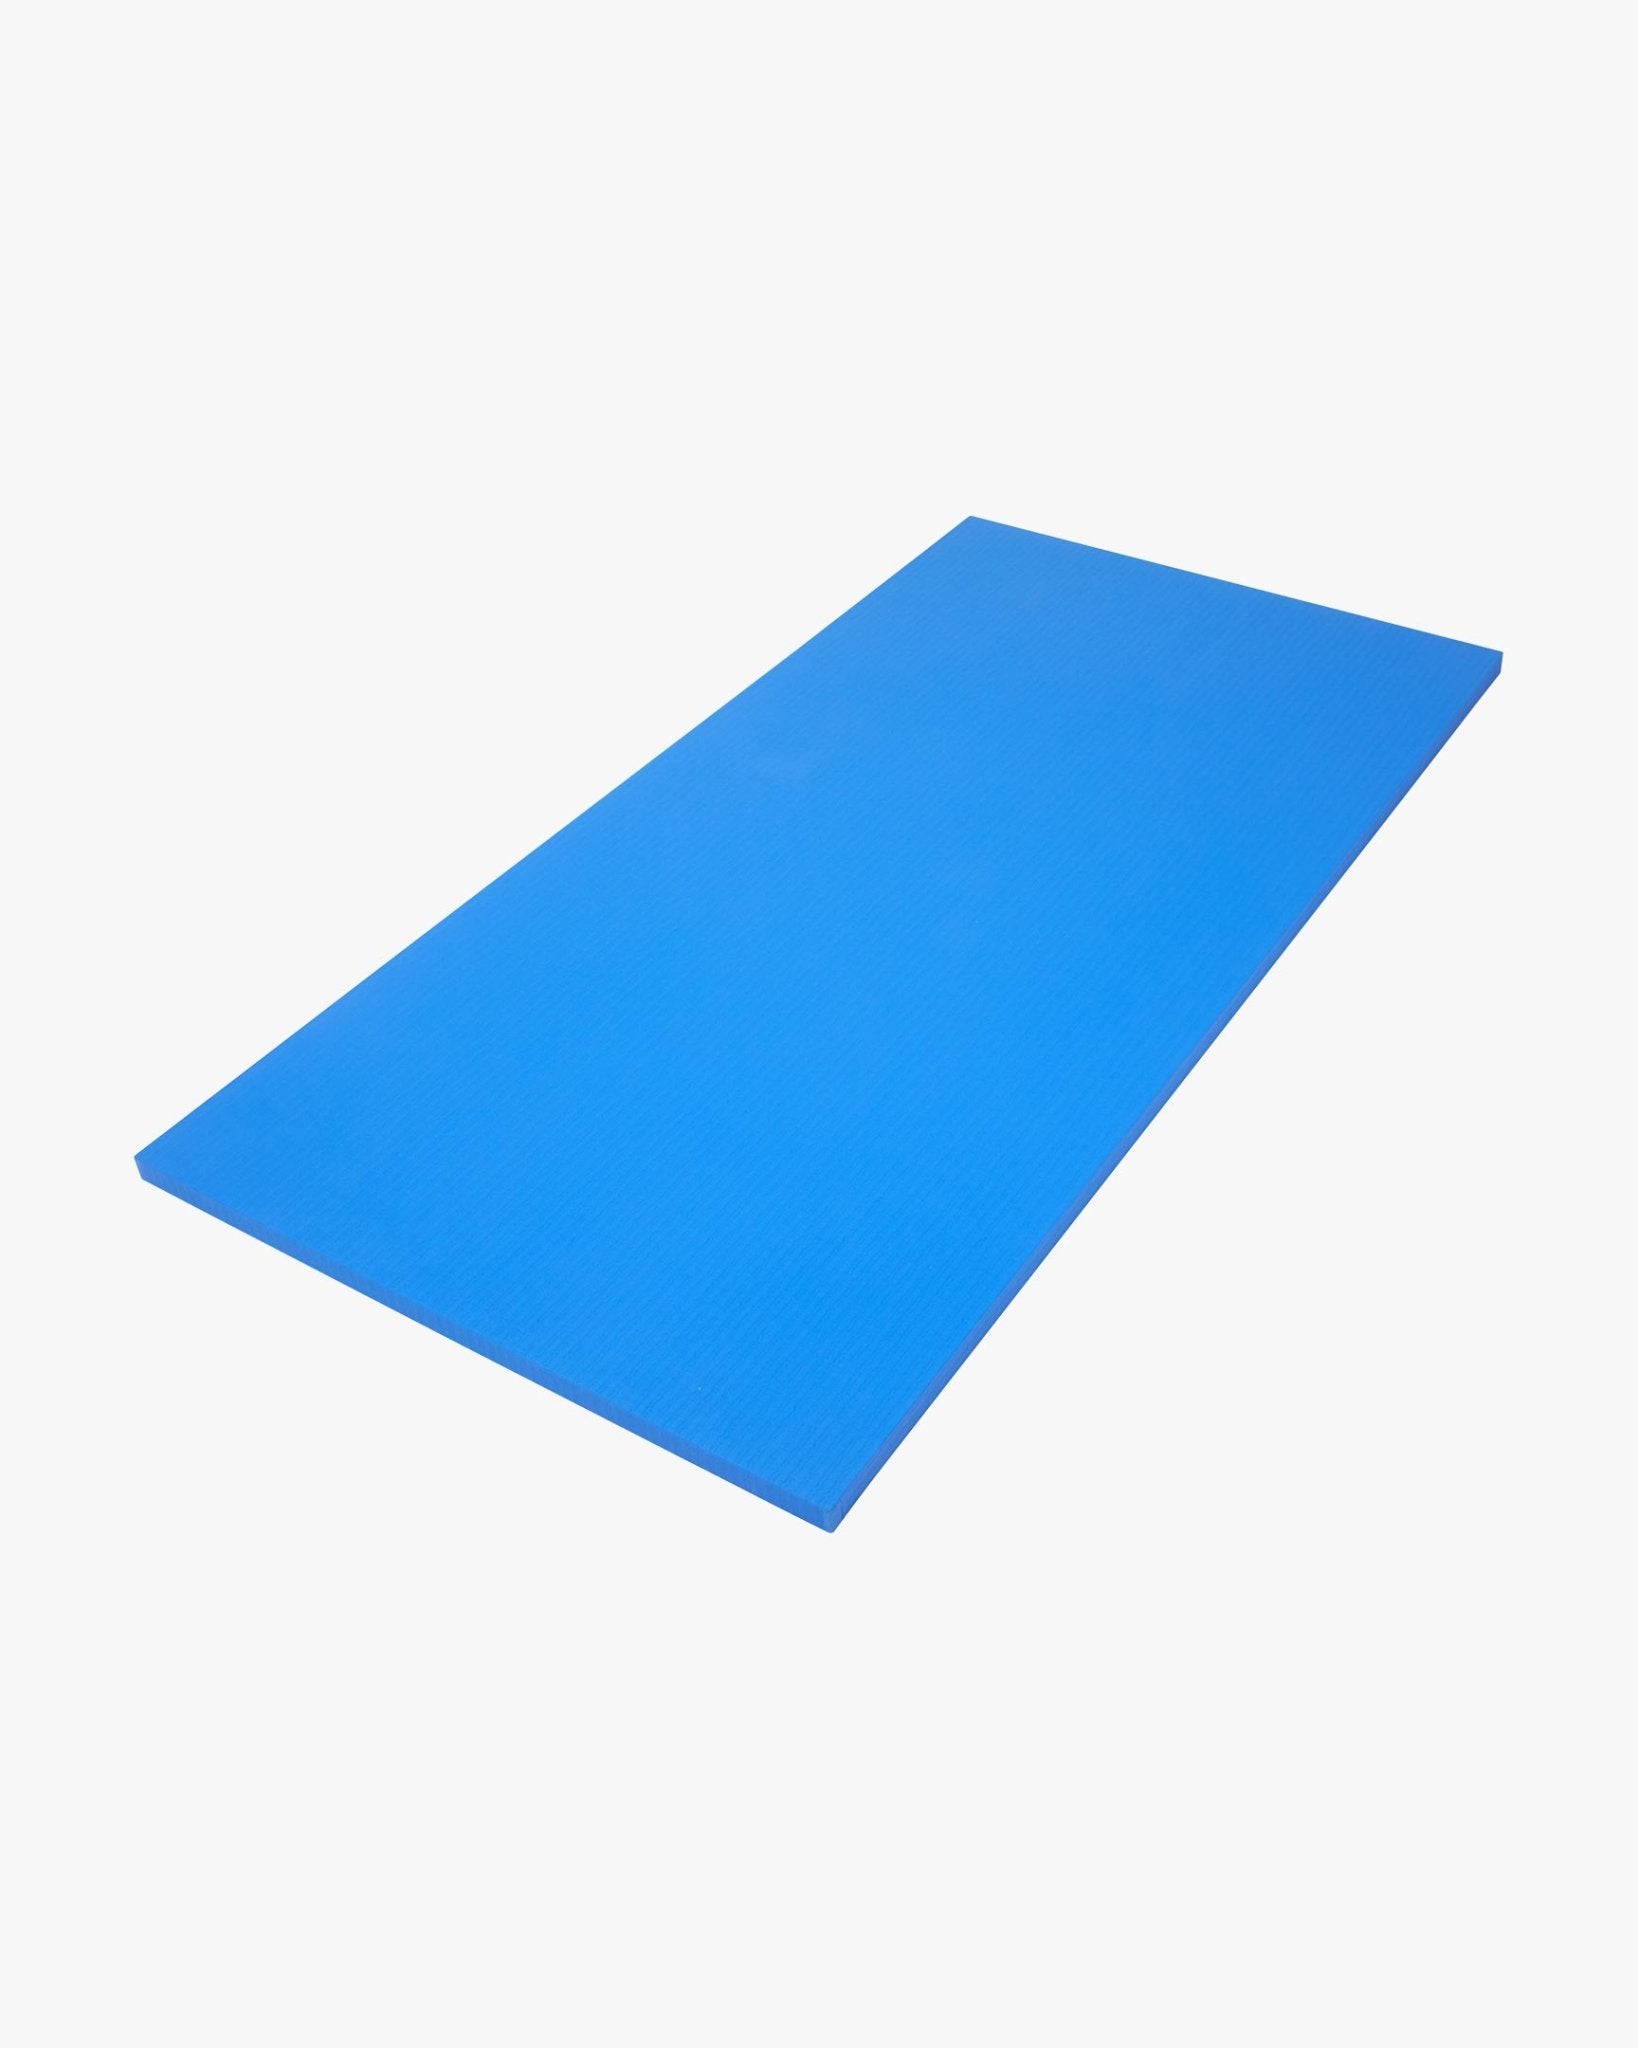 Tatami Tile Mat 1m x 2m x 1.5" Blue